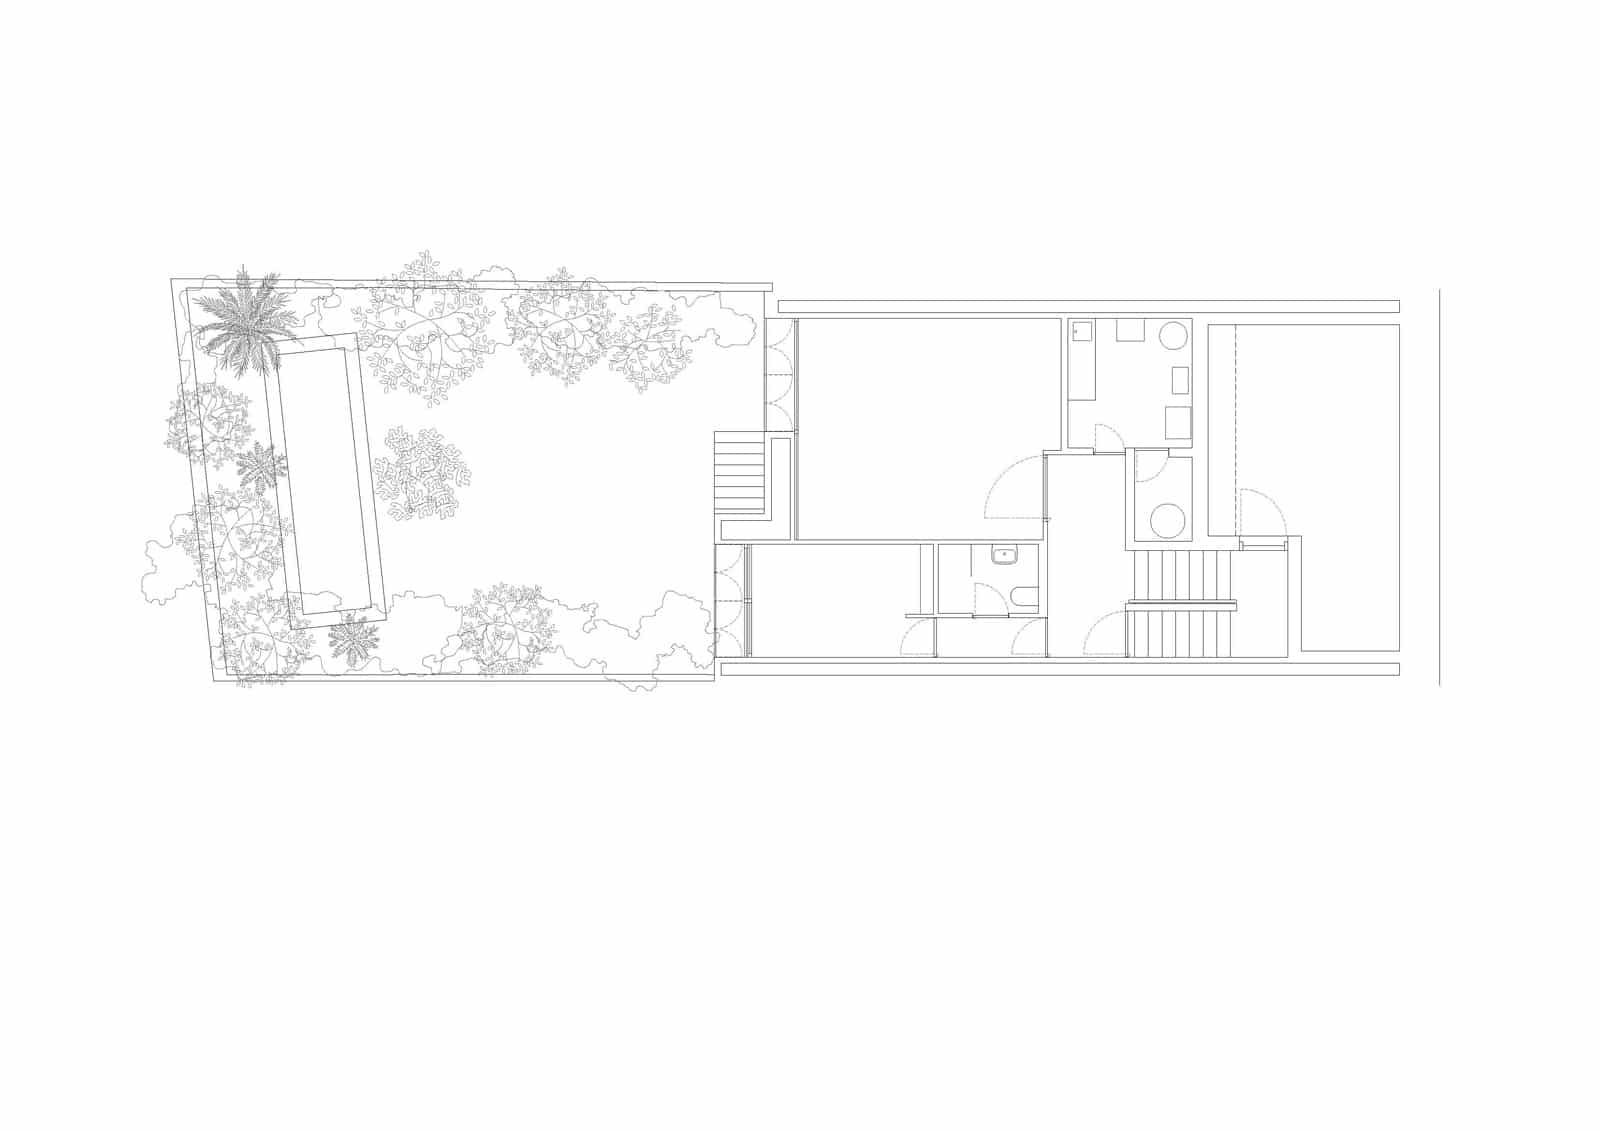 Verdi House  - 20220211 ArquitecturaG VerdiHouse 9.1 51